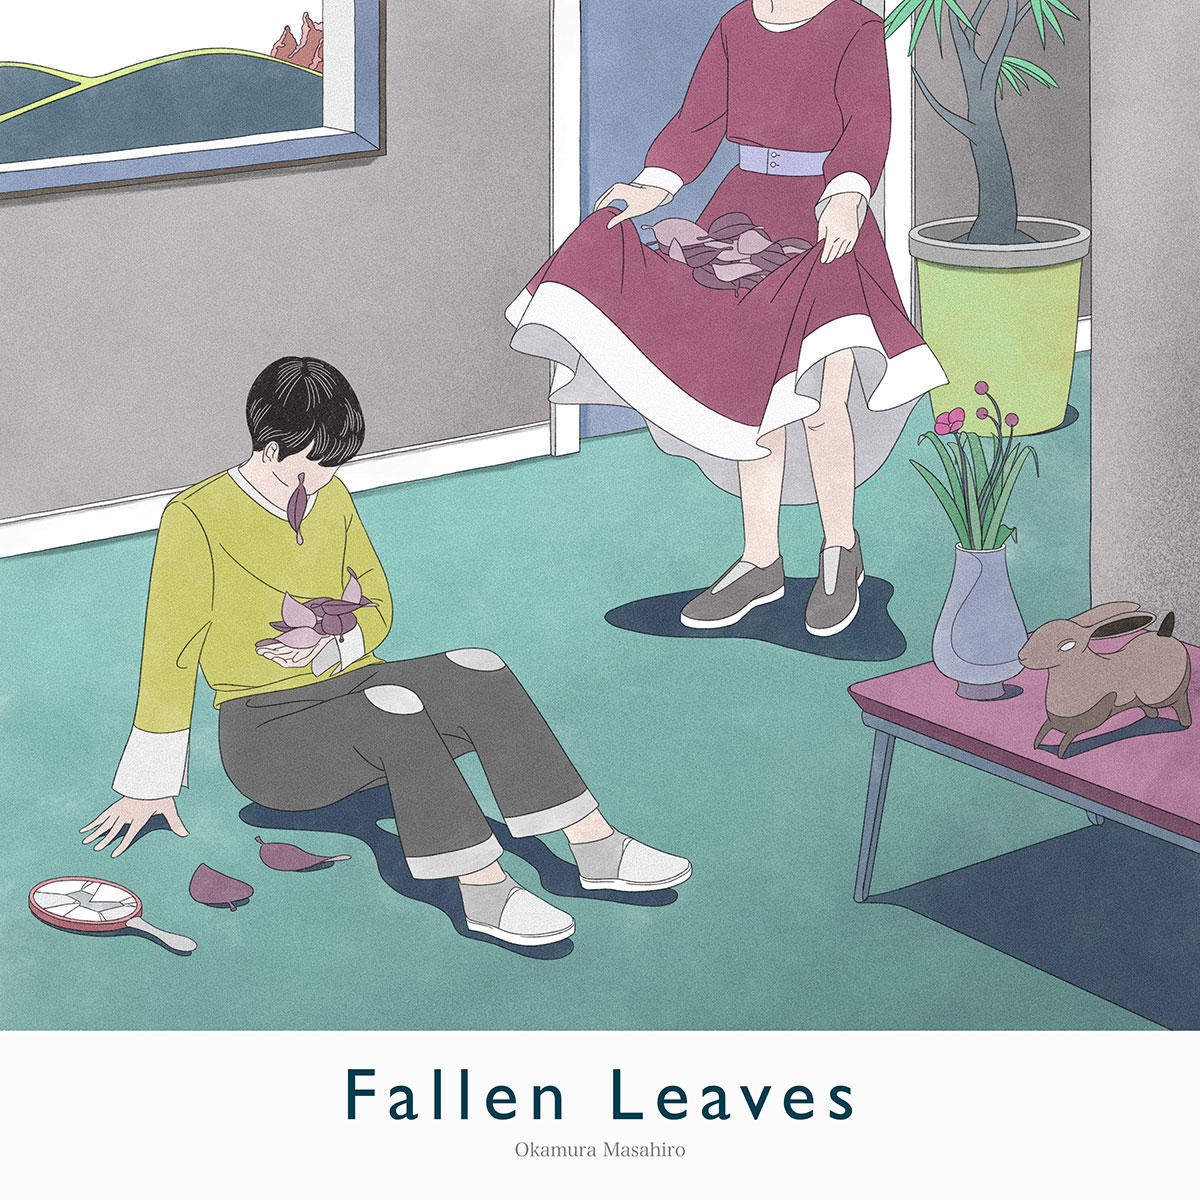 Fallen-Leaves-_岡村匡紘_jk_20231129.jpg